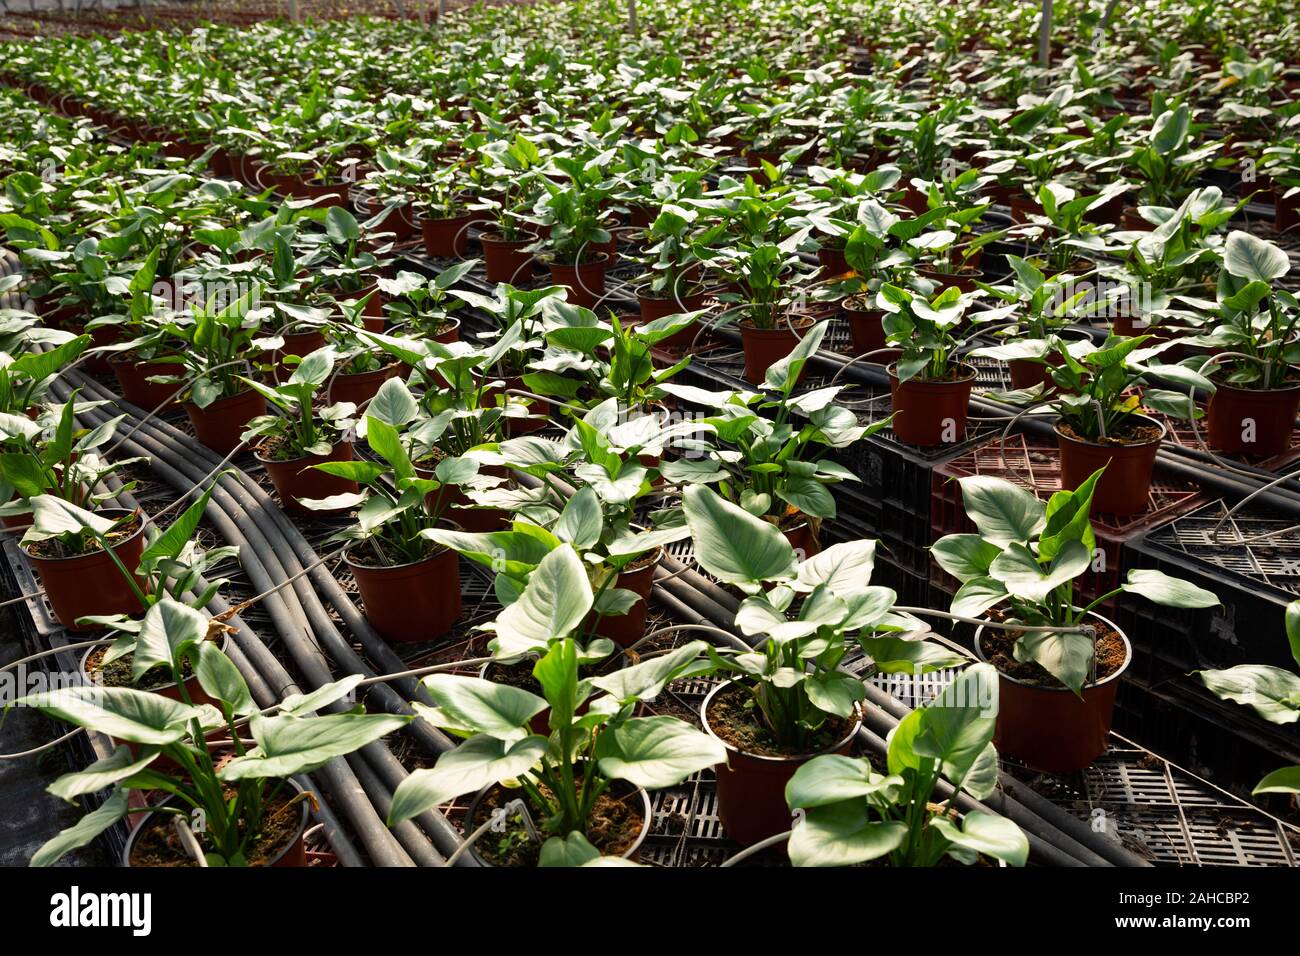 Plantation of asplenium antiquum in greenhouse Stock Photo